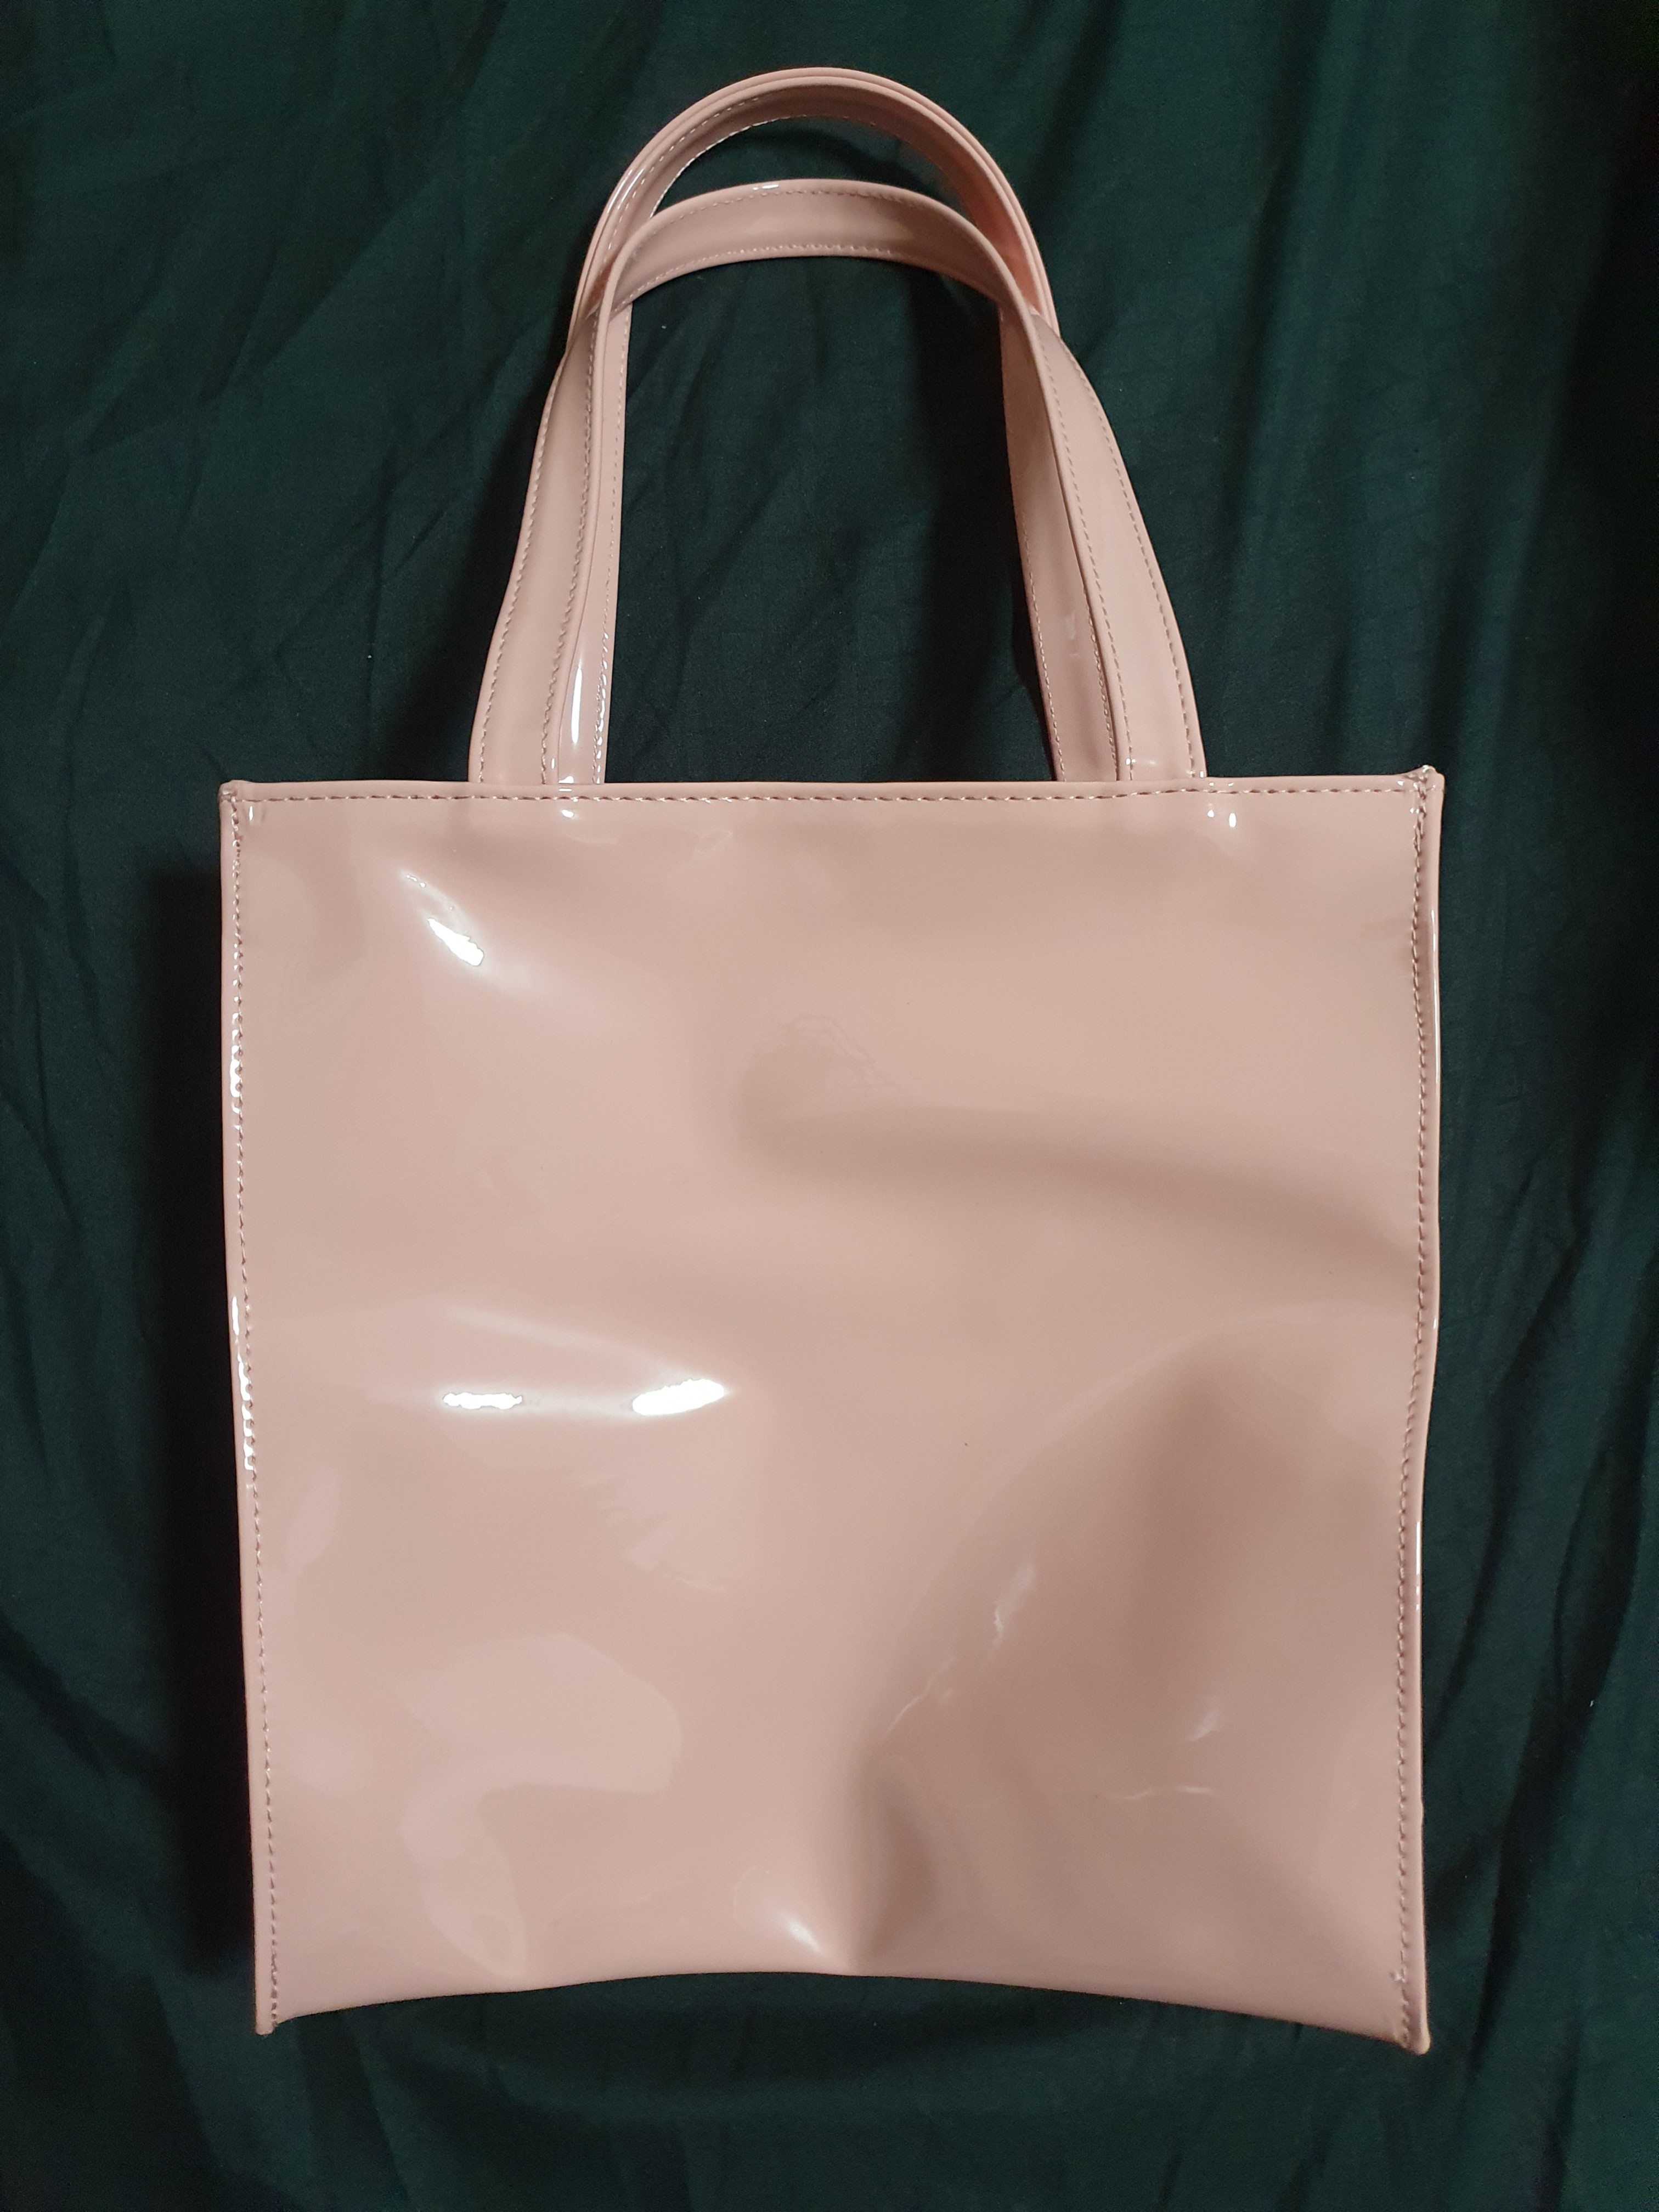 DeMellier Stockholm Leather Shoulder Bag | eBay